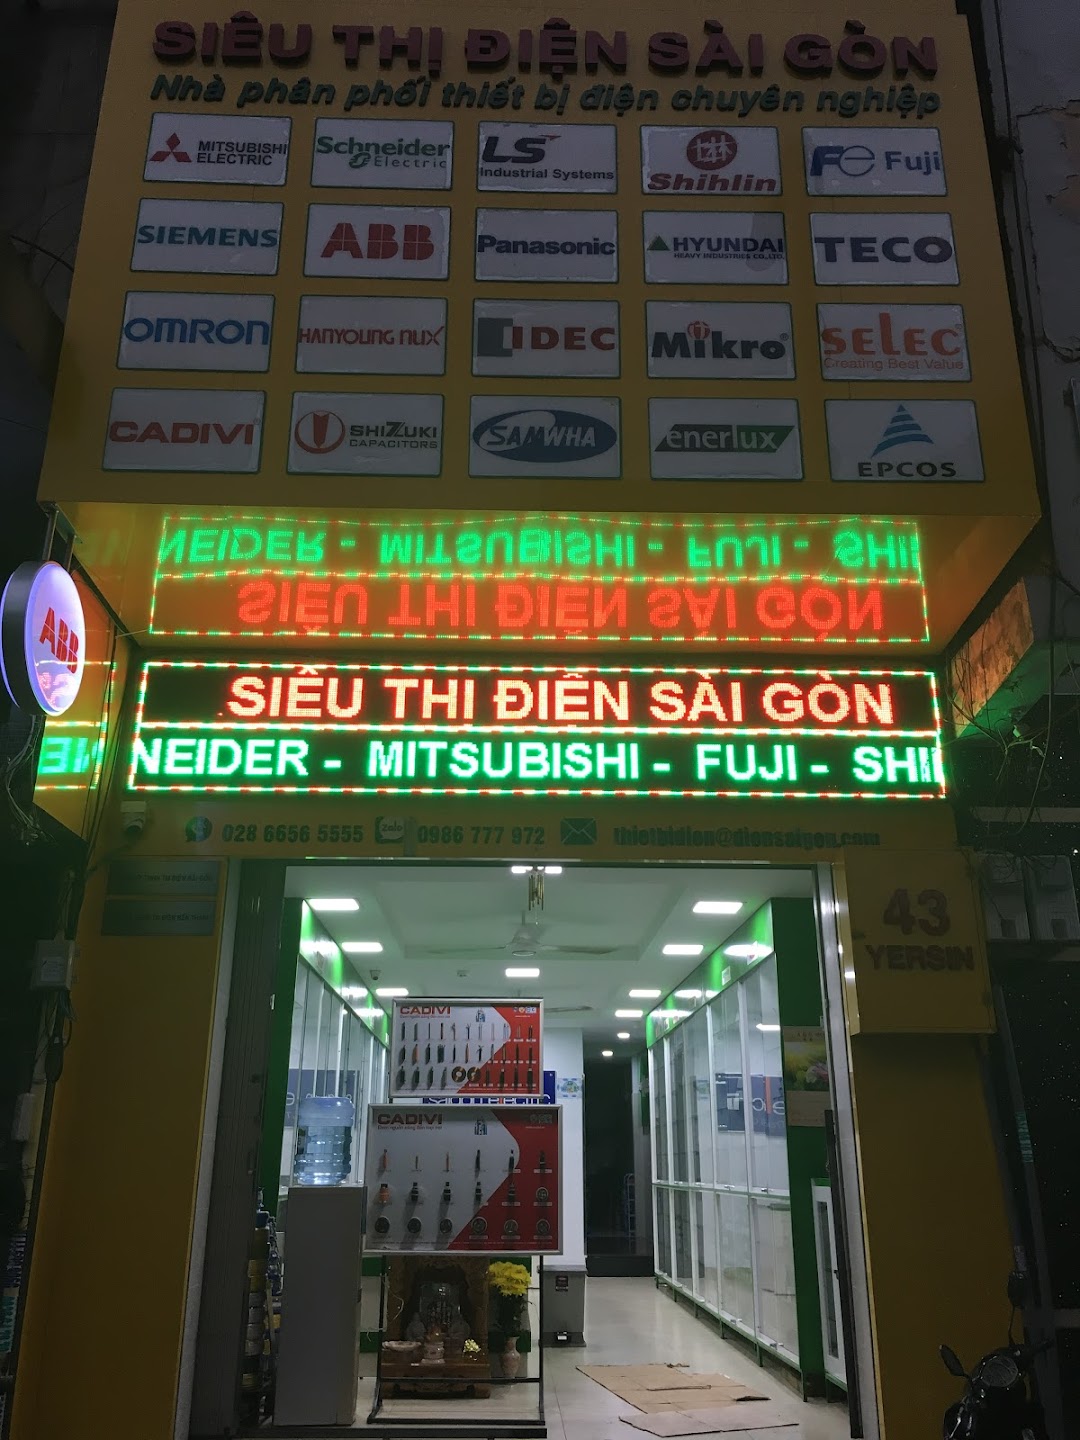 Siêu Thị Điện Sài Gòn